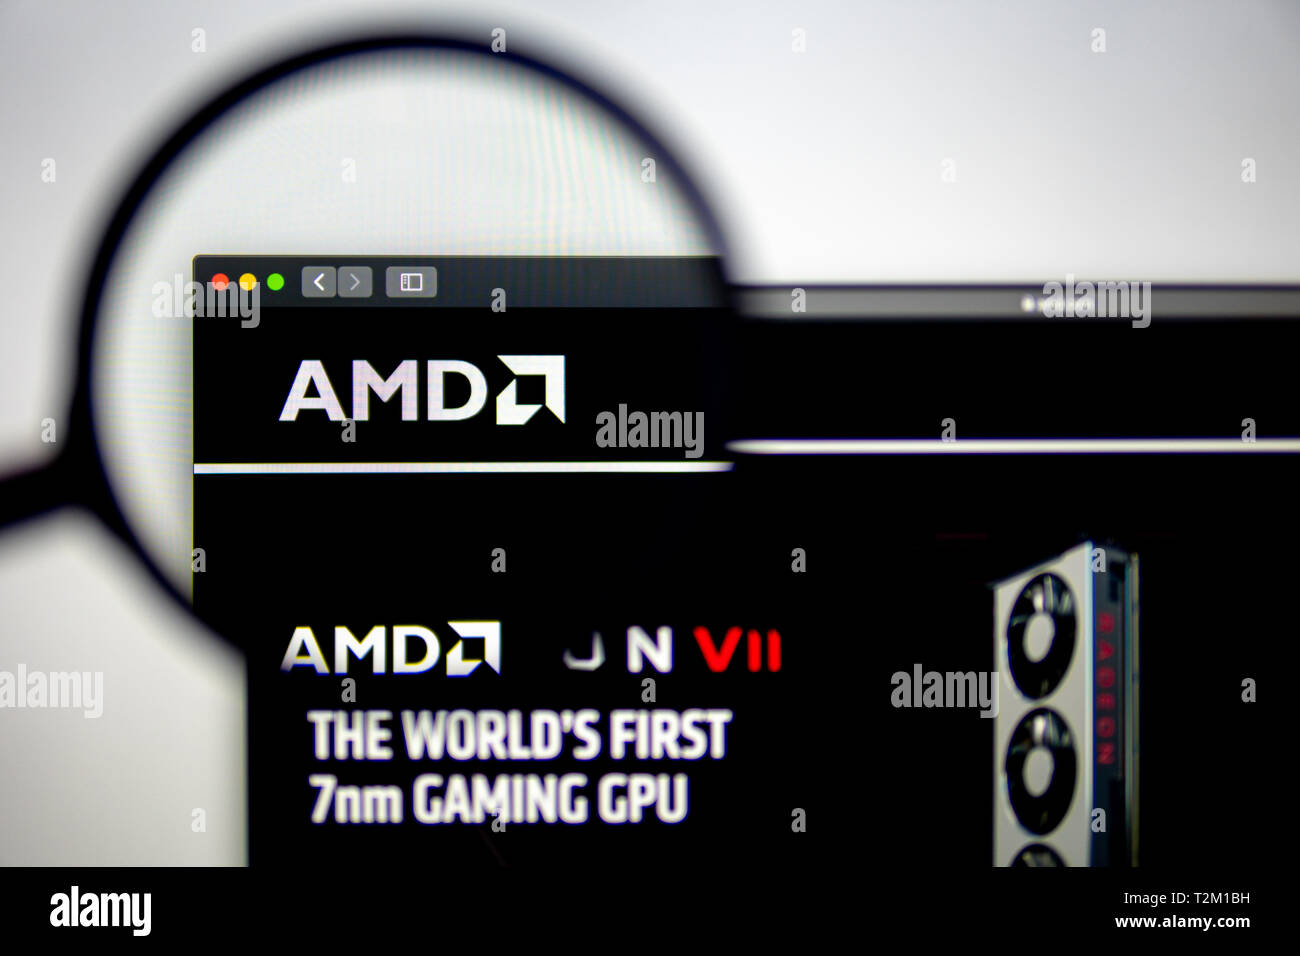 AMD Corporation Homepage. AMD Corporation Logo sichtbar durch ein Vergrößerungsglas. Сan als Illustration für Medien verwendet werden. Stockfoto